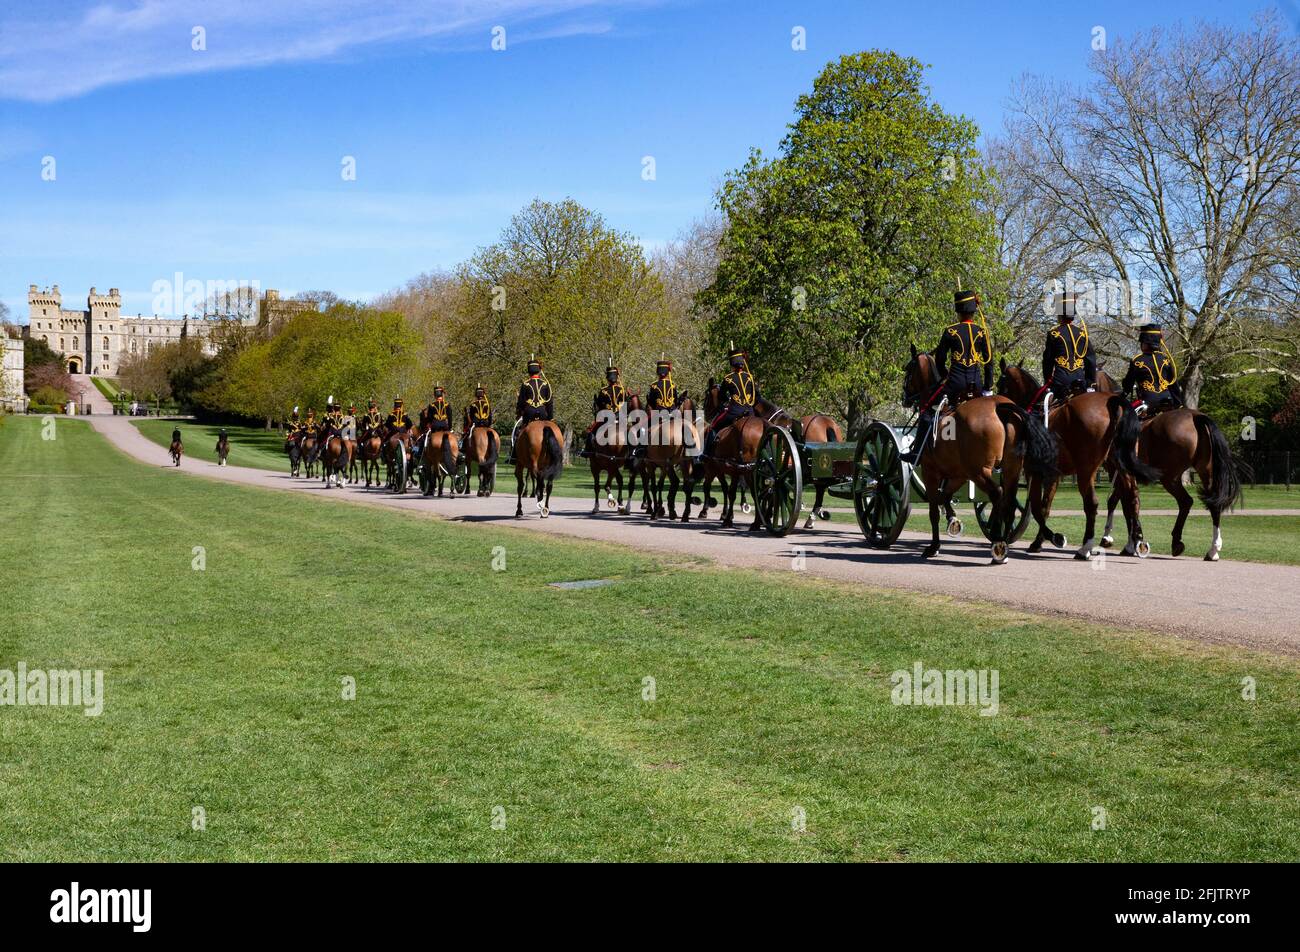 La truppa del Re si scese lungo la lunga passeggiata fino al Castello di Windsor al funerale del Duca di Edimburgo. Il principe Filippo fu sepolto nella cappella di San Giorgio. Foto Stock